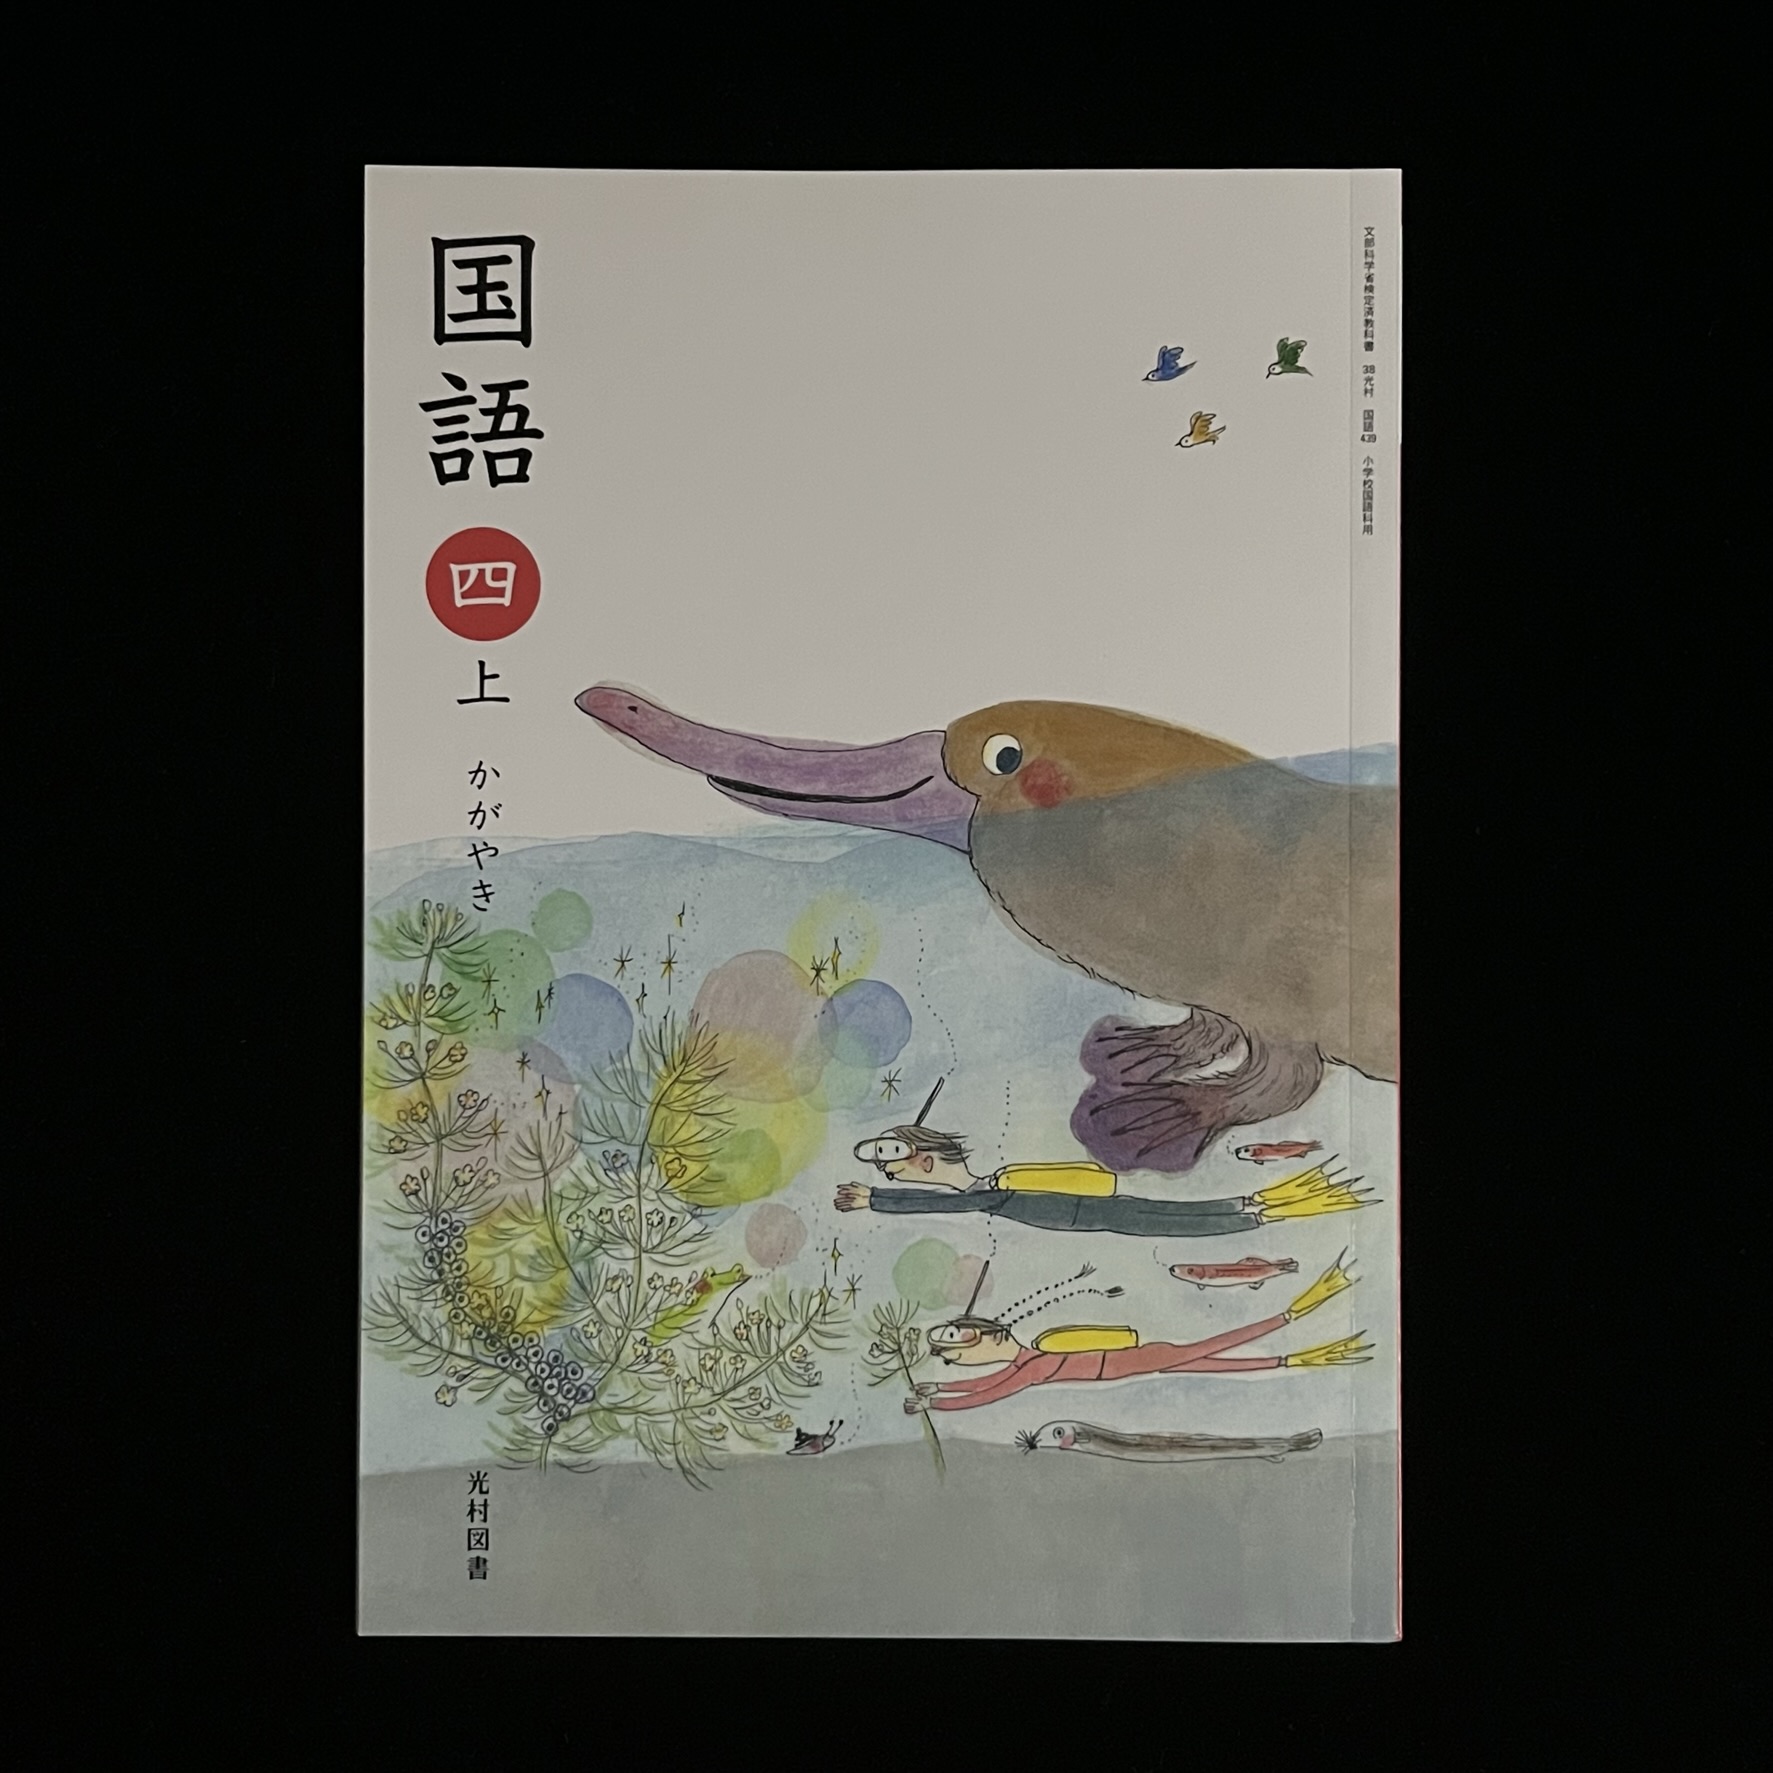 小学校の国語の教科書の４年生の上巻。水から顔をだしてこっちを見ているカモノハシのイラストが描かれている。水の中にはボンベを背負ったダイバーとお魚や水草、空には鳥が飛んでいます。